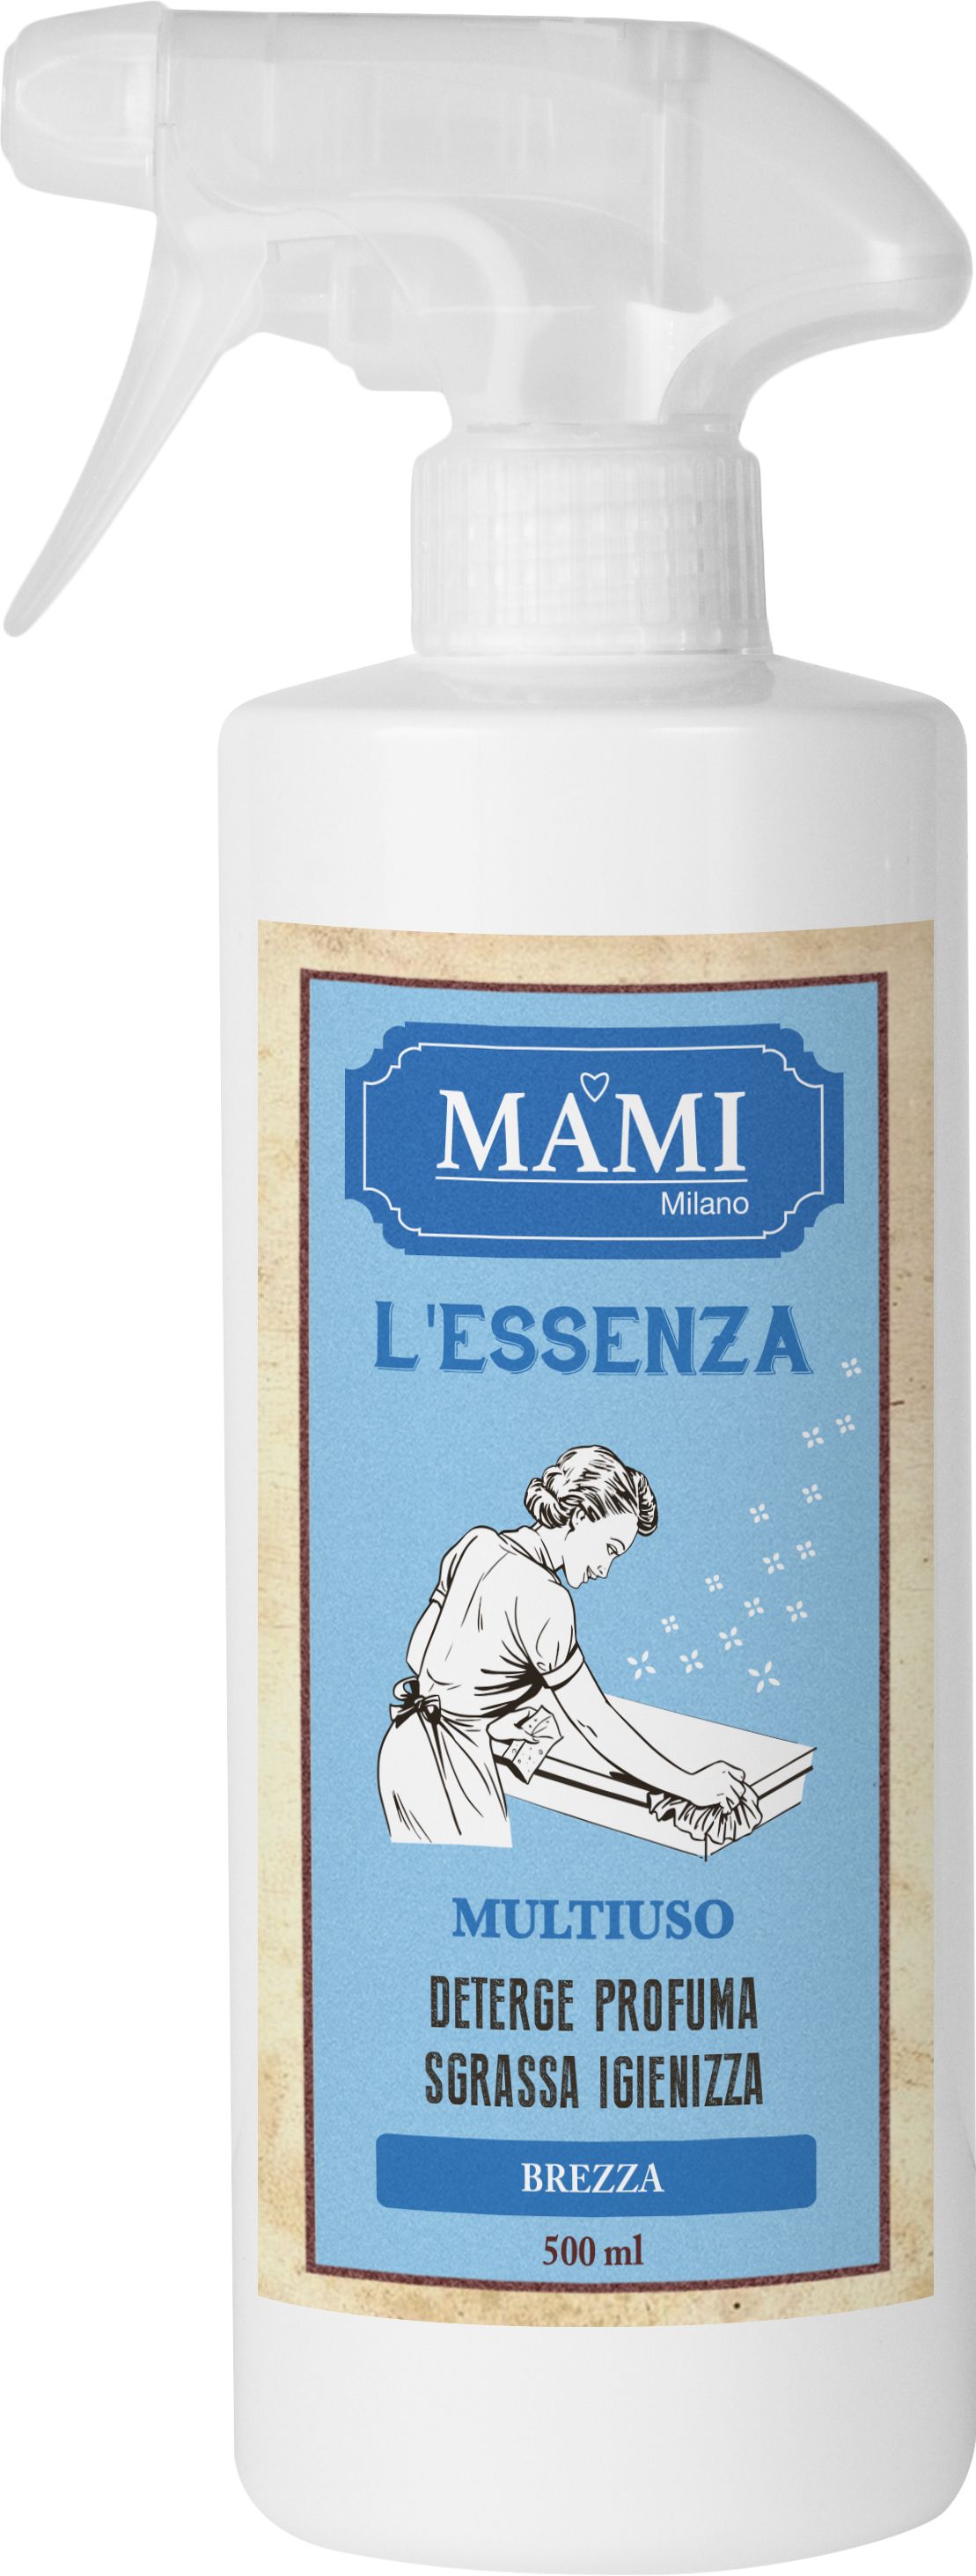 multiuso spray 500 ml - brezza Mami Milano